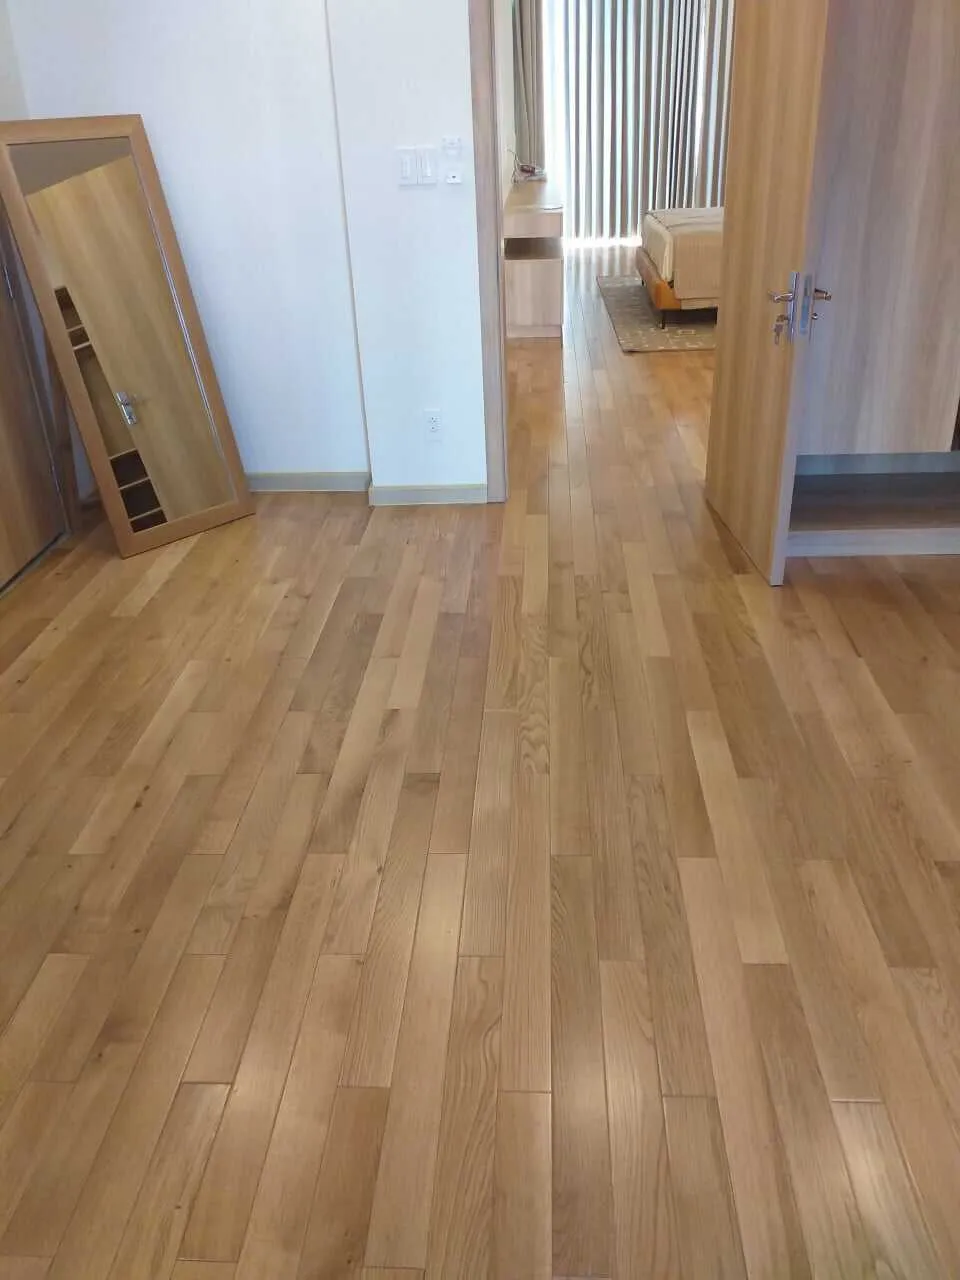 Mẫu sàn gỗ tone màu sáng thích hợp cho căn hộ phong cách hiện đại